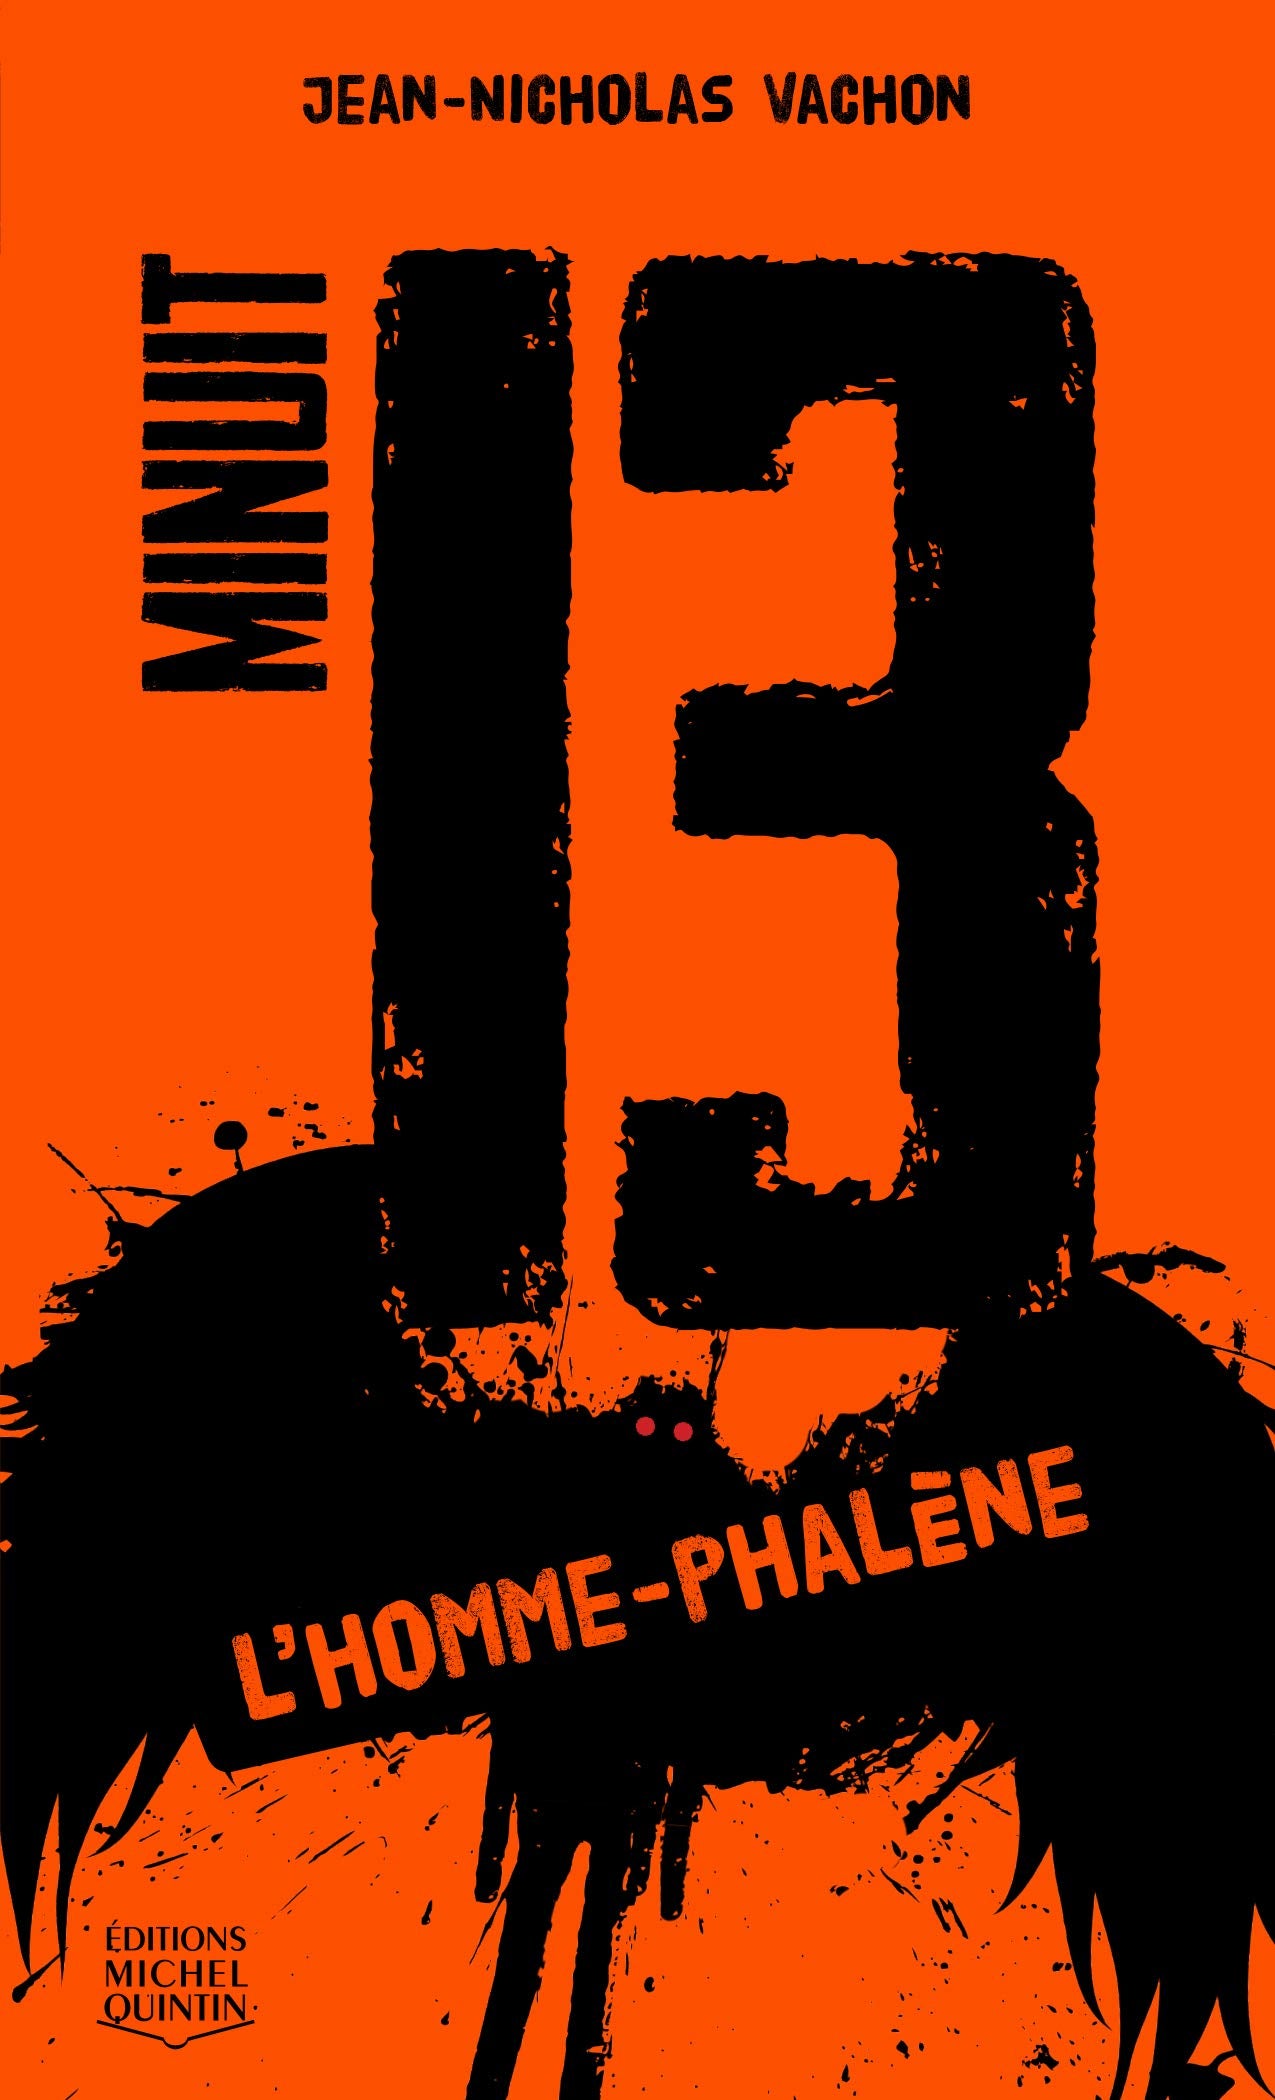 Livre ISBN 2894356692 Minuit 13 # 2 : L'homme-phalène (Jean-Nicholas Vachon)